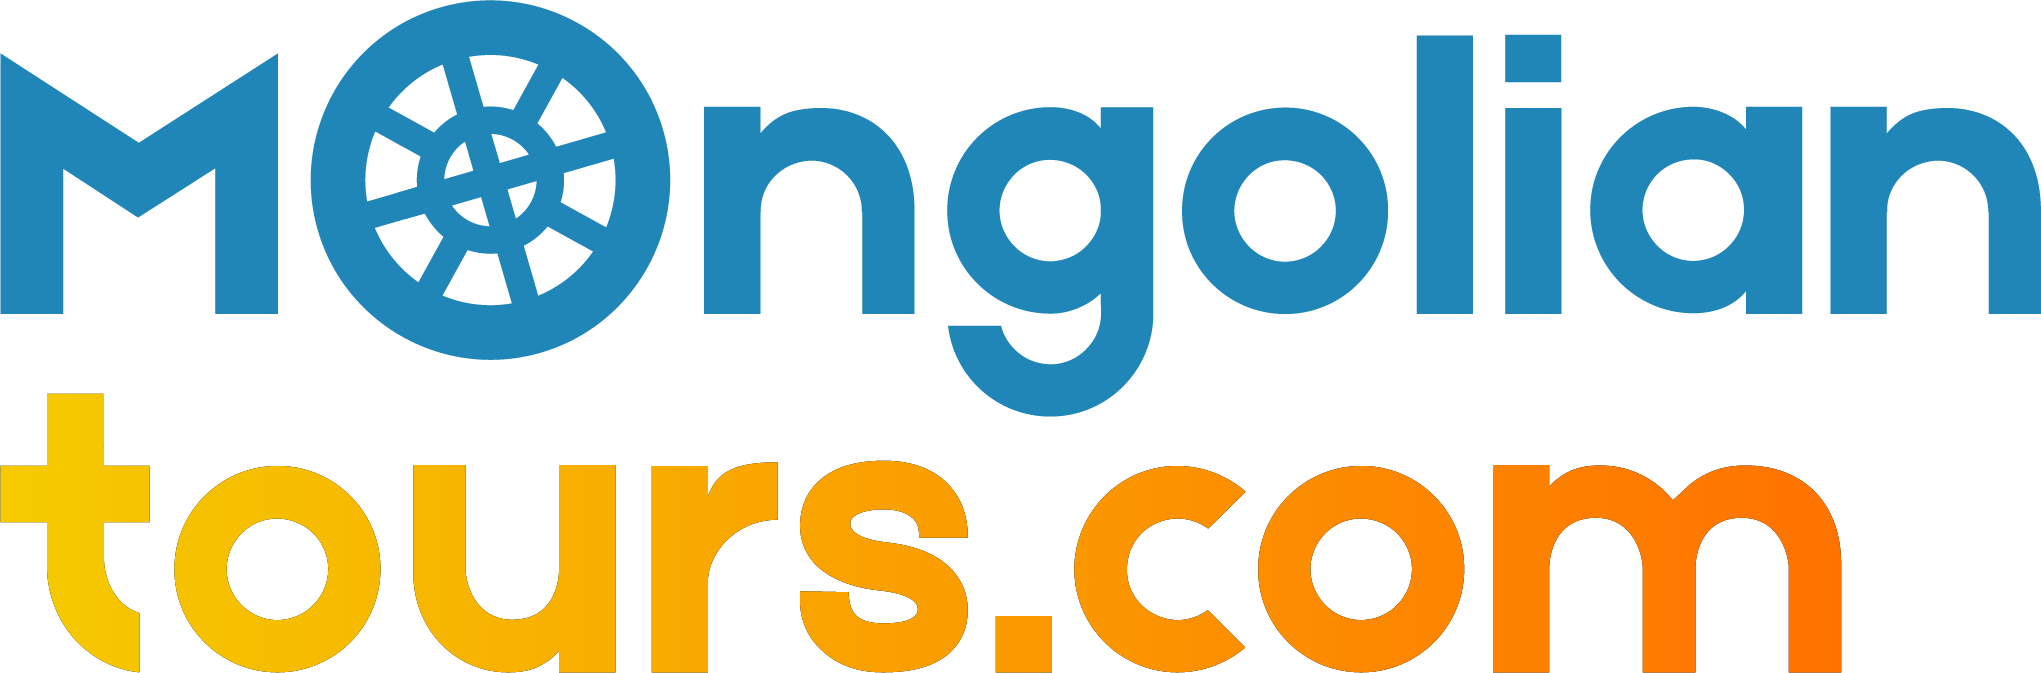 mongolian tours logo